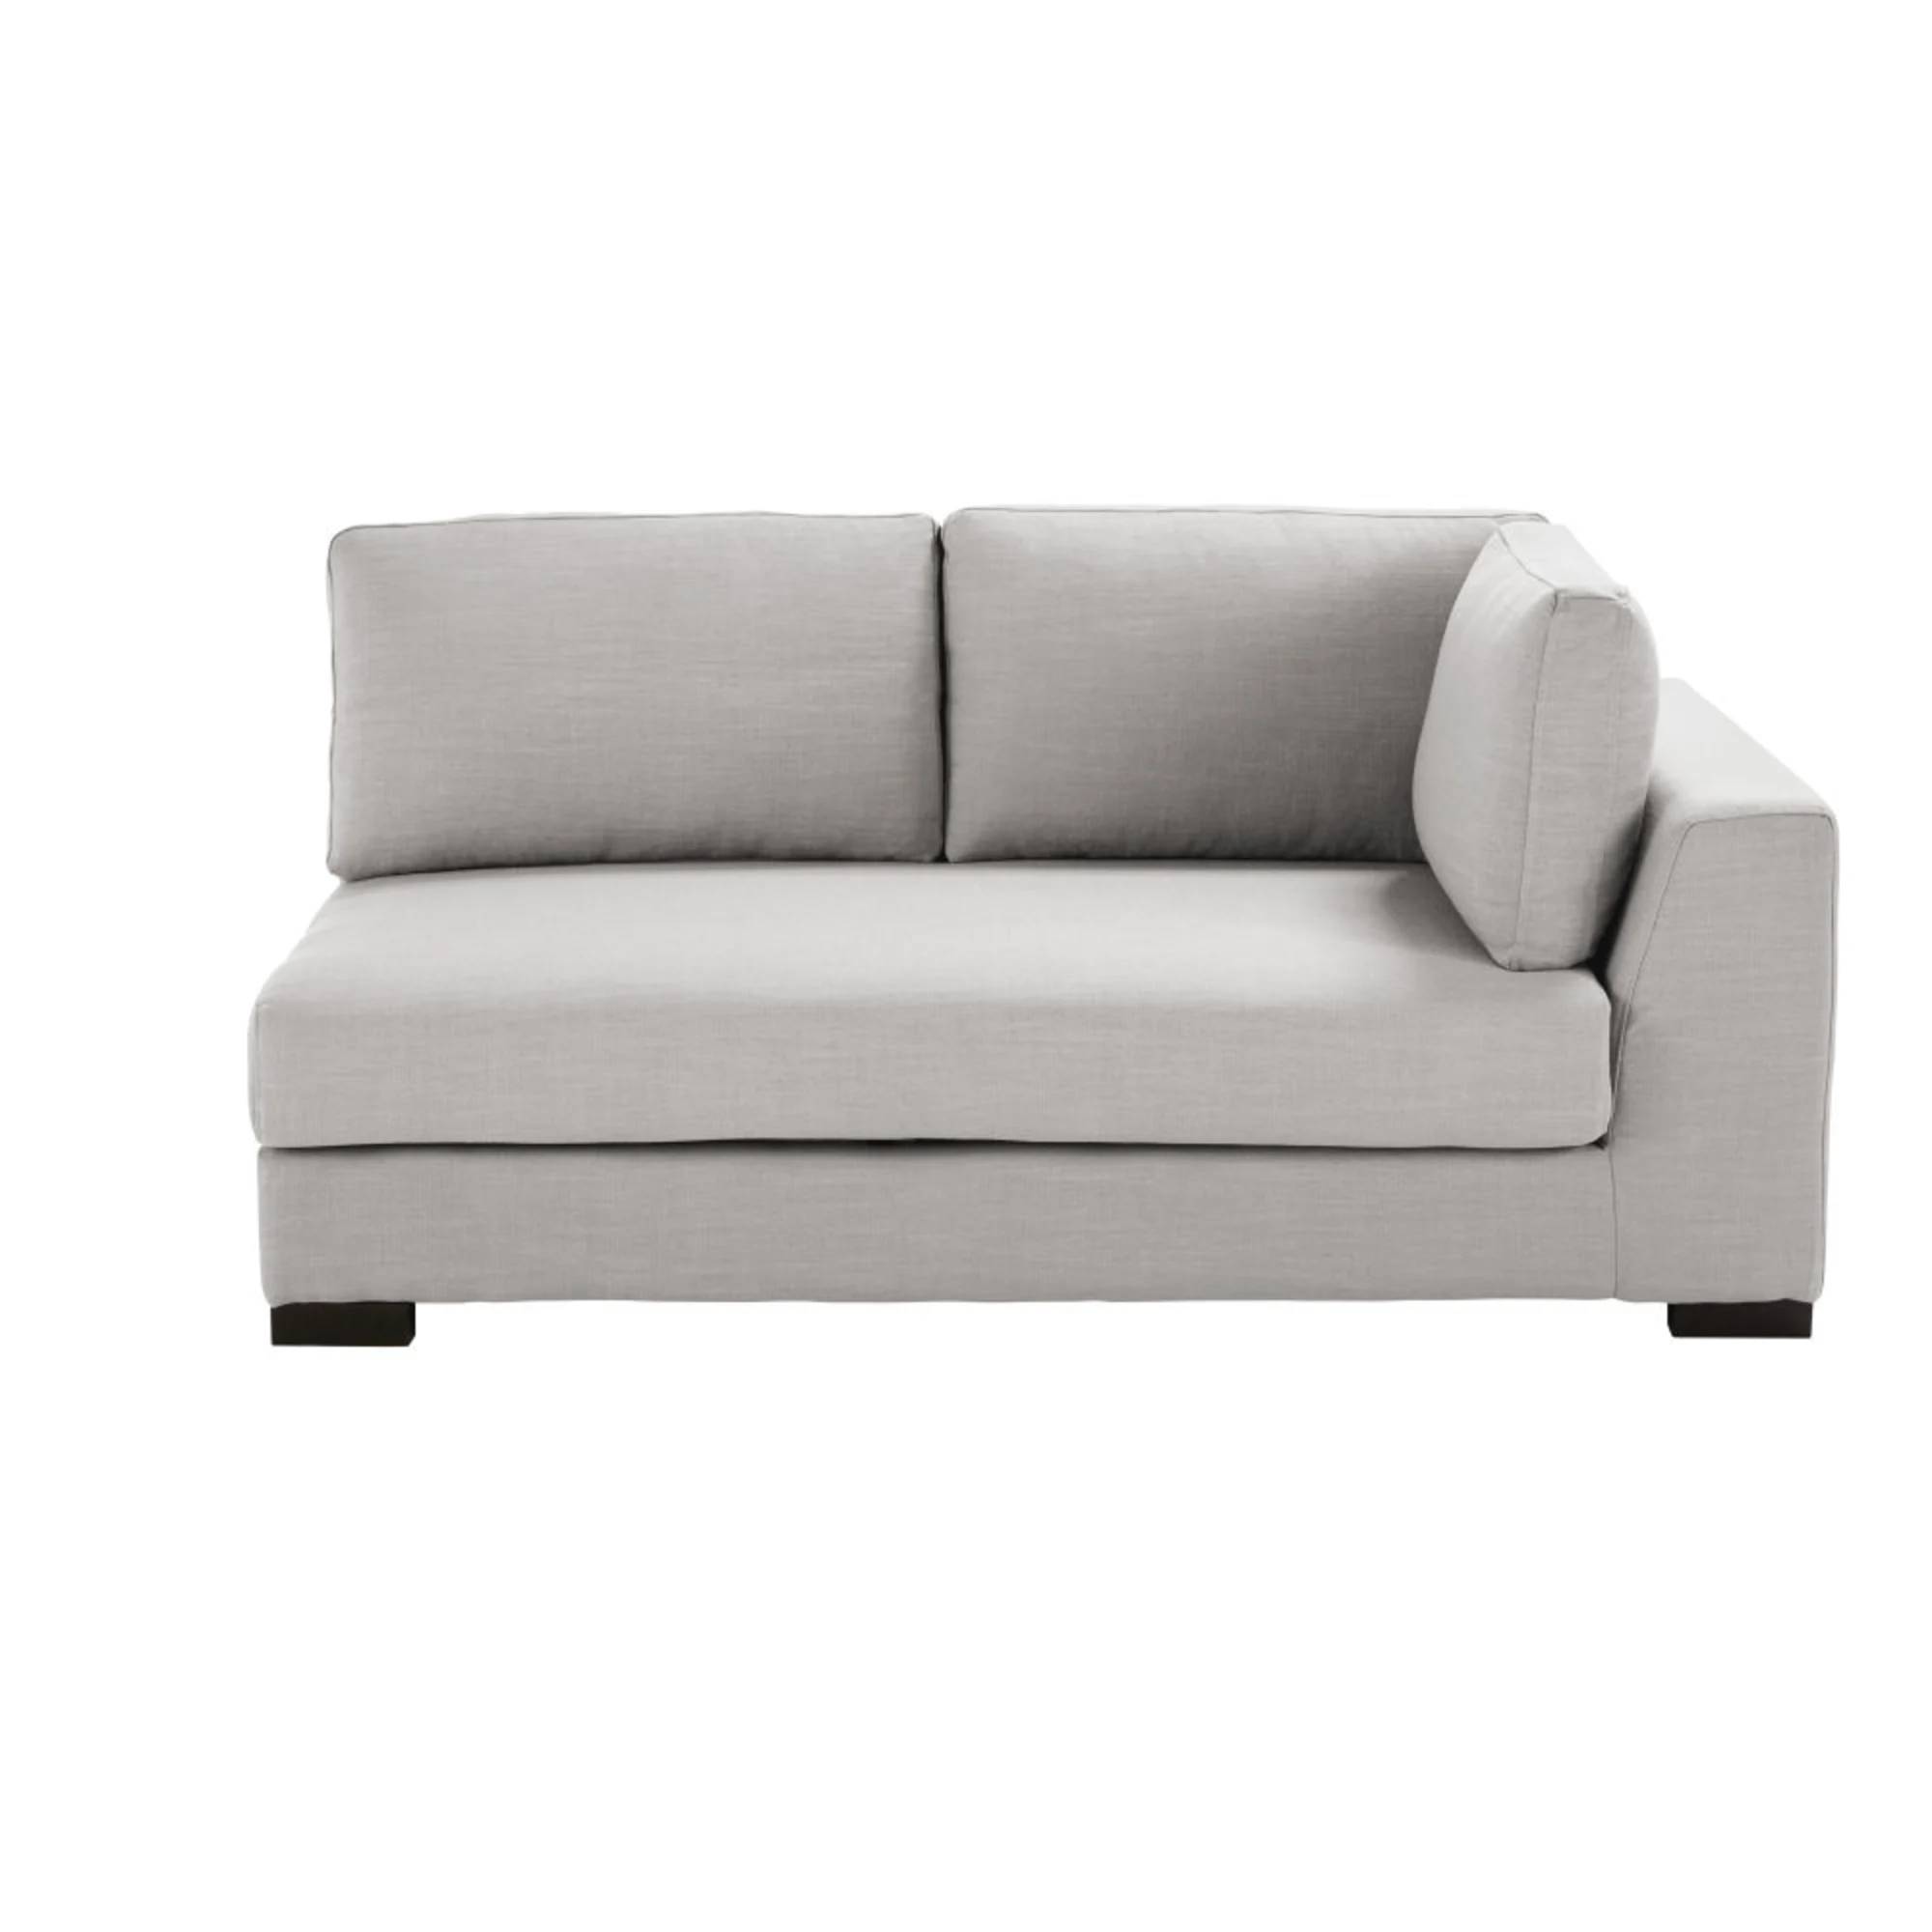 Reposabrazos derecho para sofá modular de 2 plazas gris claro Terence de Maisons du Monde